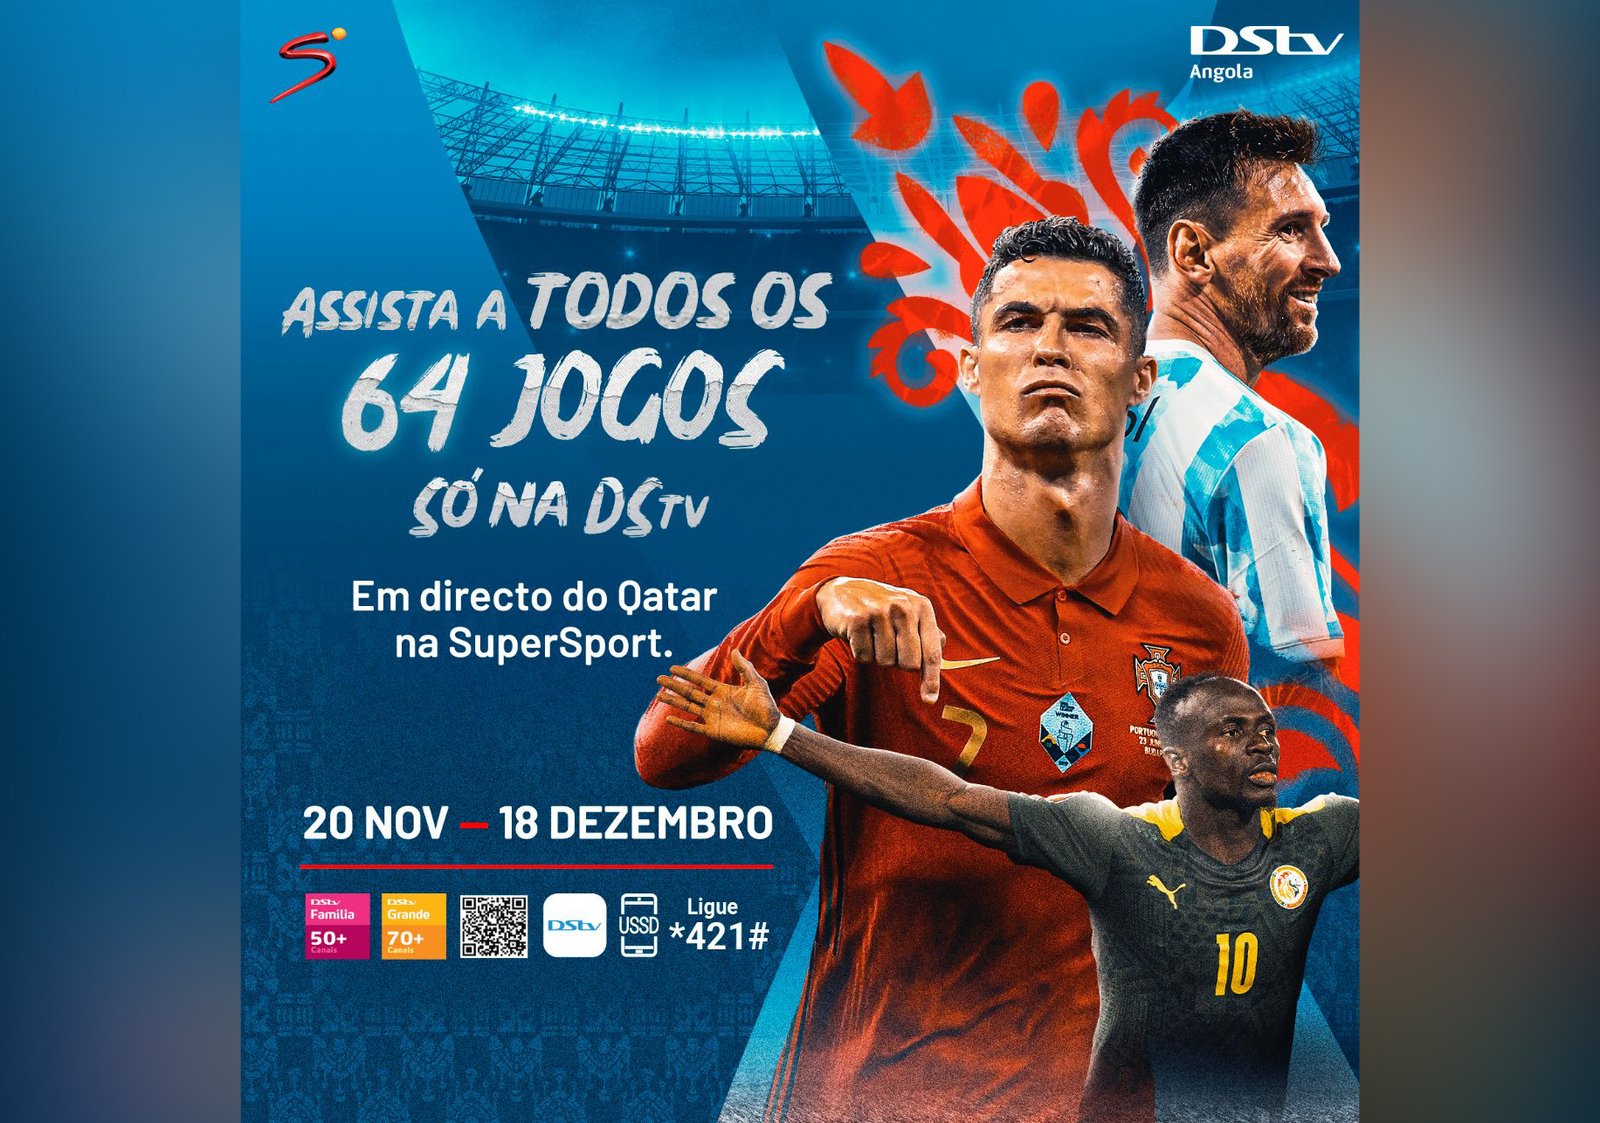 DStv - A 22ª edição do Campeonato Mundial de Futebol FIFA